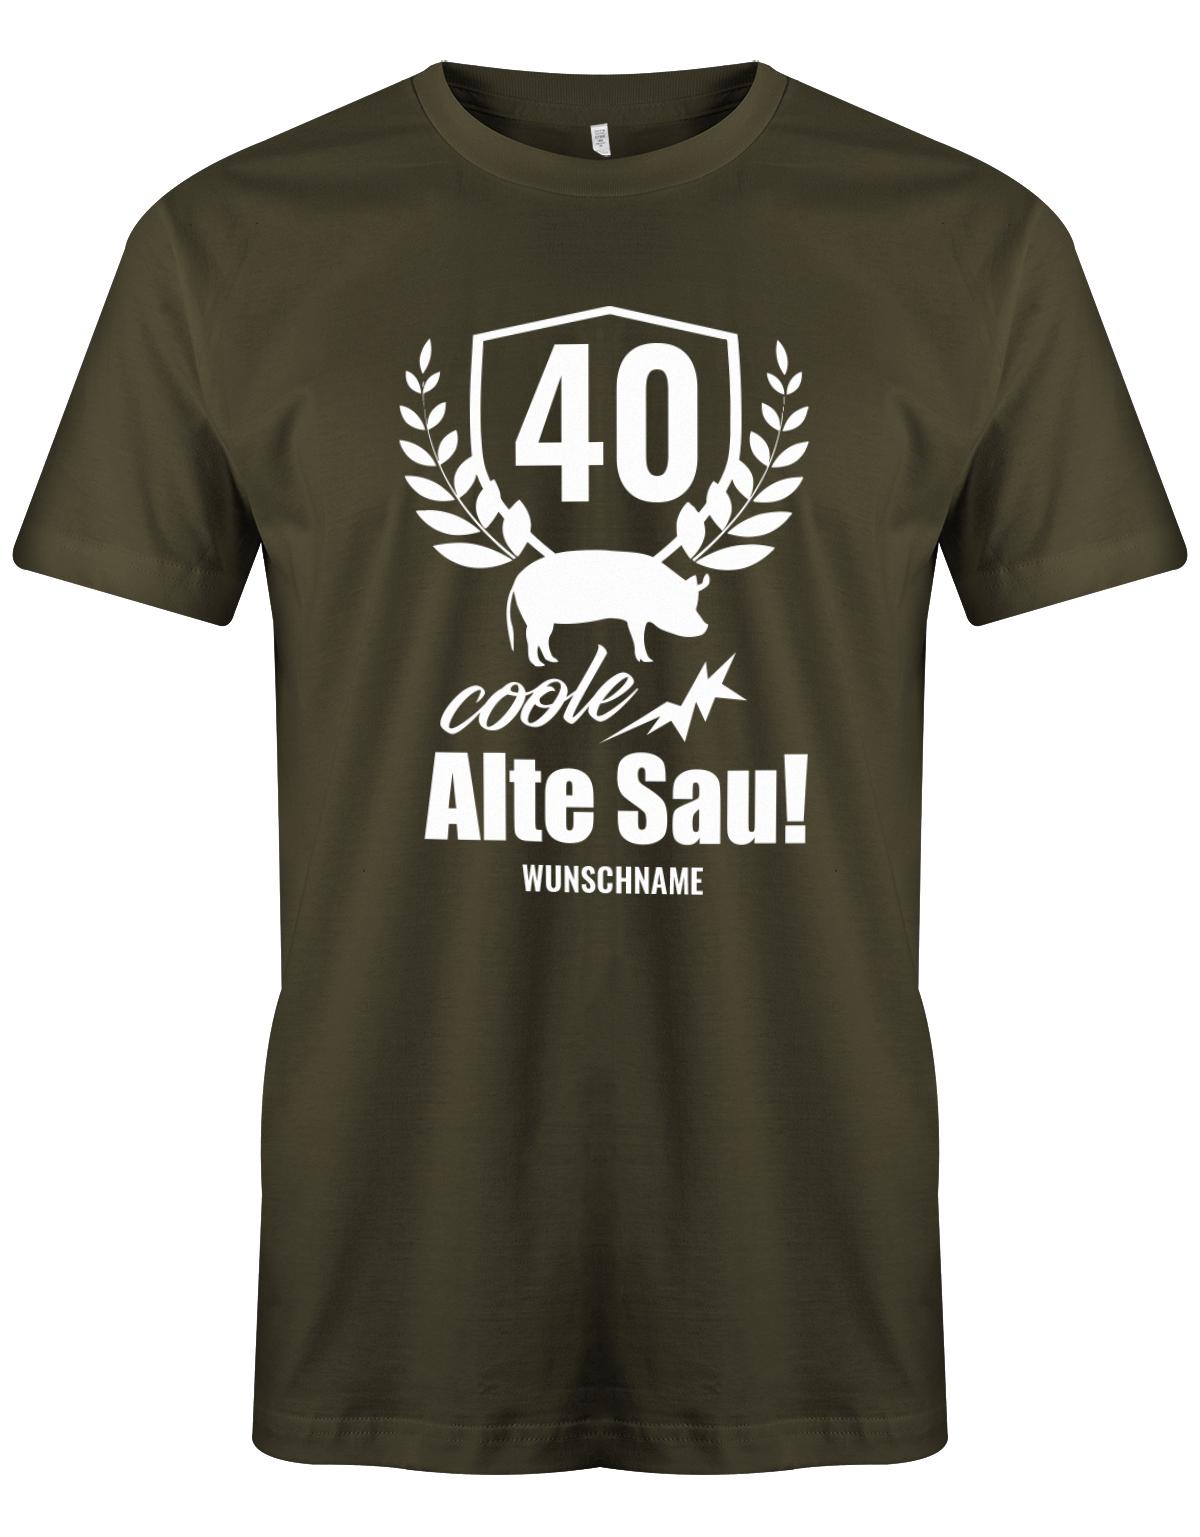 40 Alte Coole Sau Personalisiert mit Name - T-Shirt 40 Geburtstag Männer - 1983 myShirtStore Army